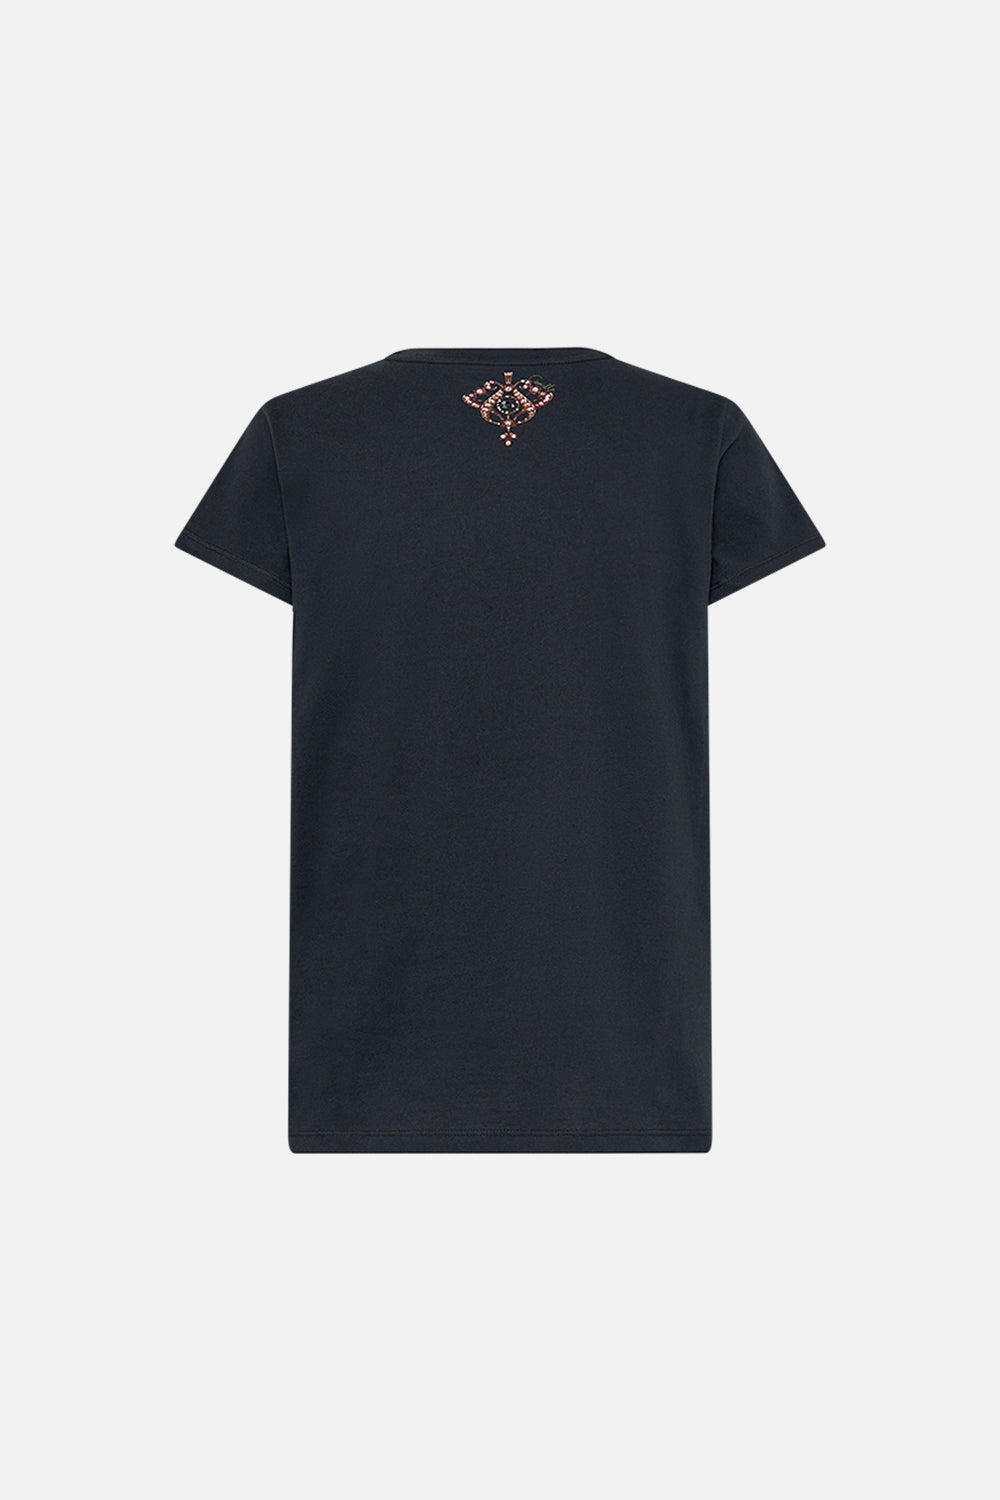 CAMILLA slim fit graphic t shirt in Nouveau Noir print